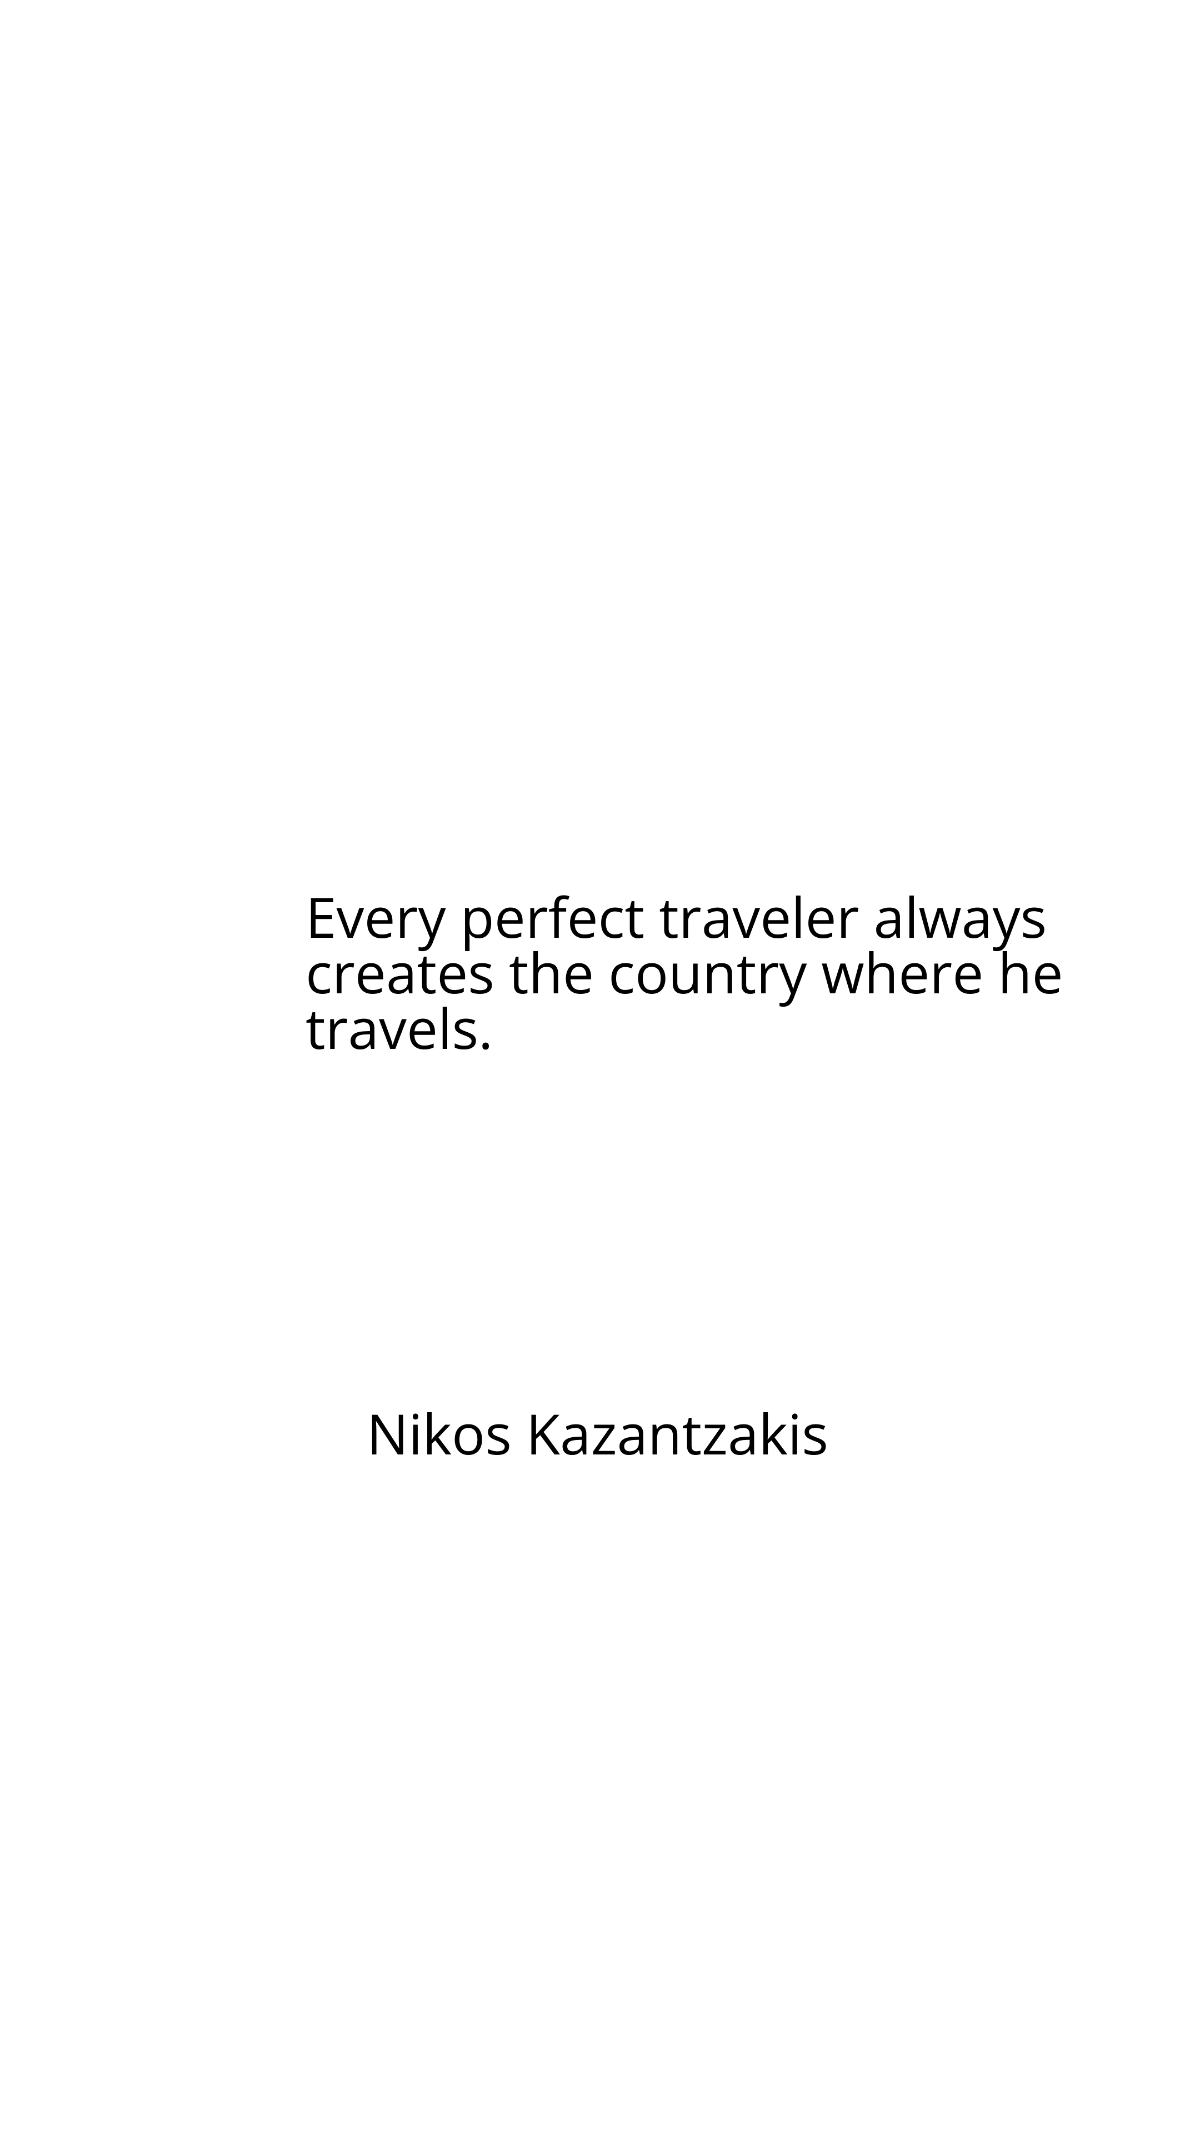 Free Nikos Kazantzakis - Every perfect traveler always creates the country where he travels. Template